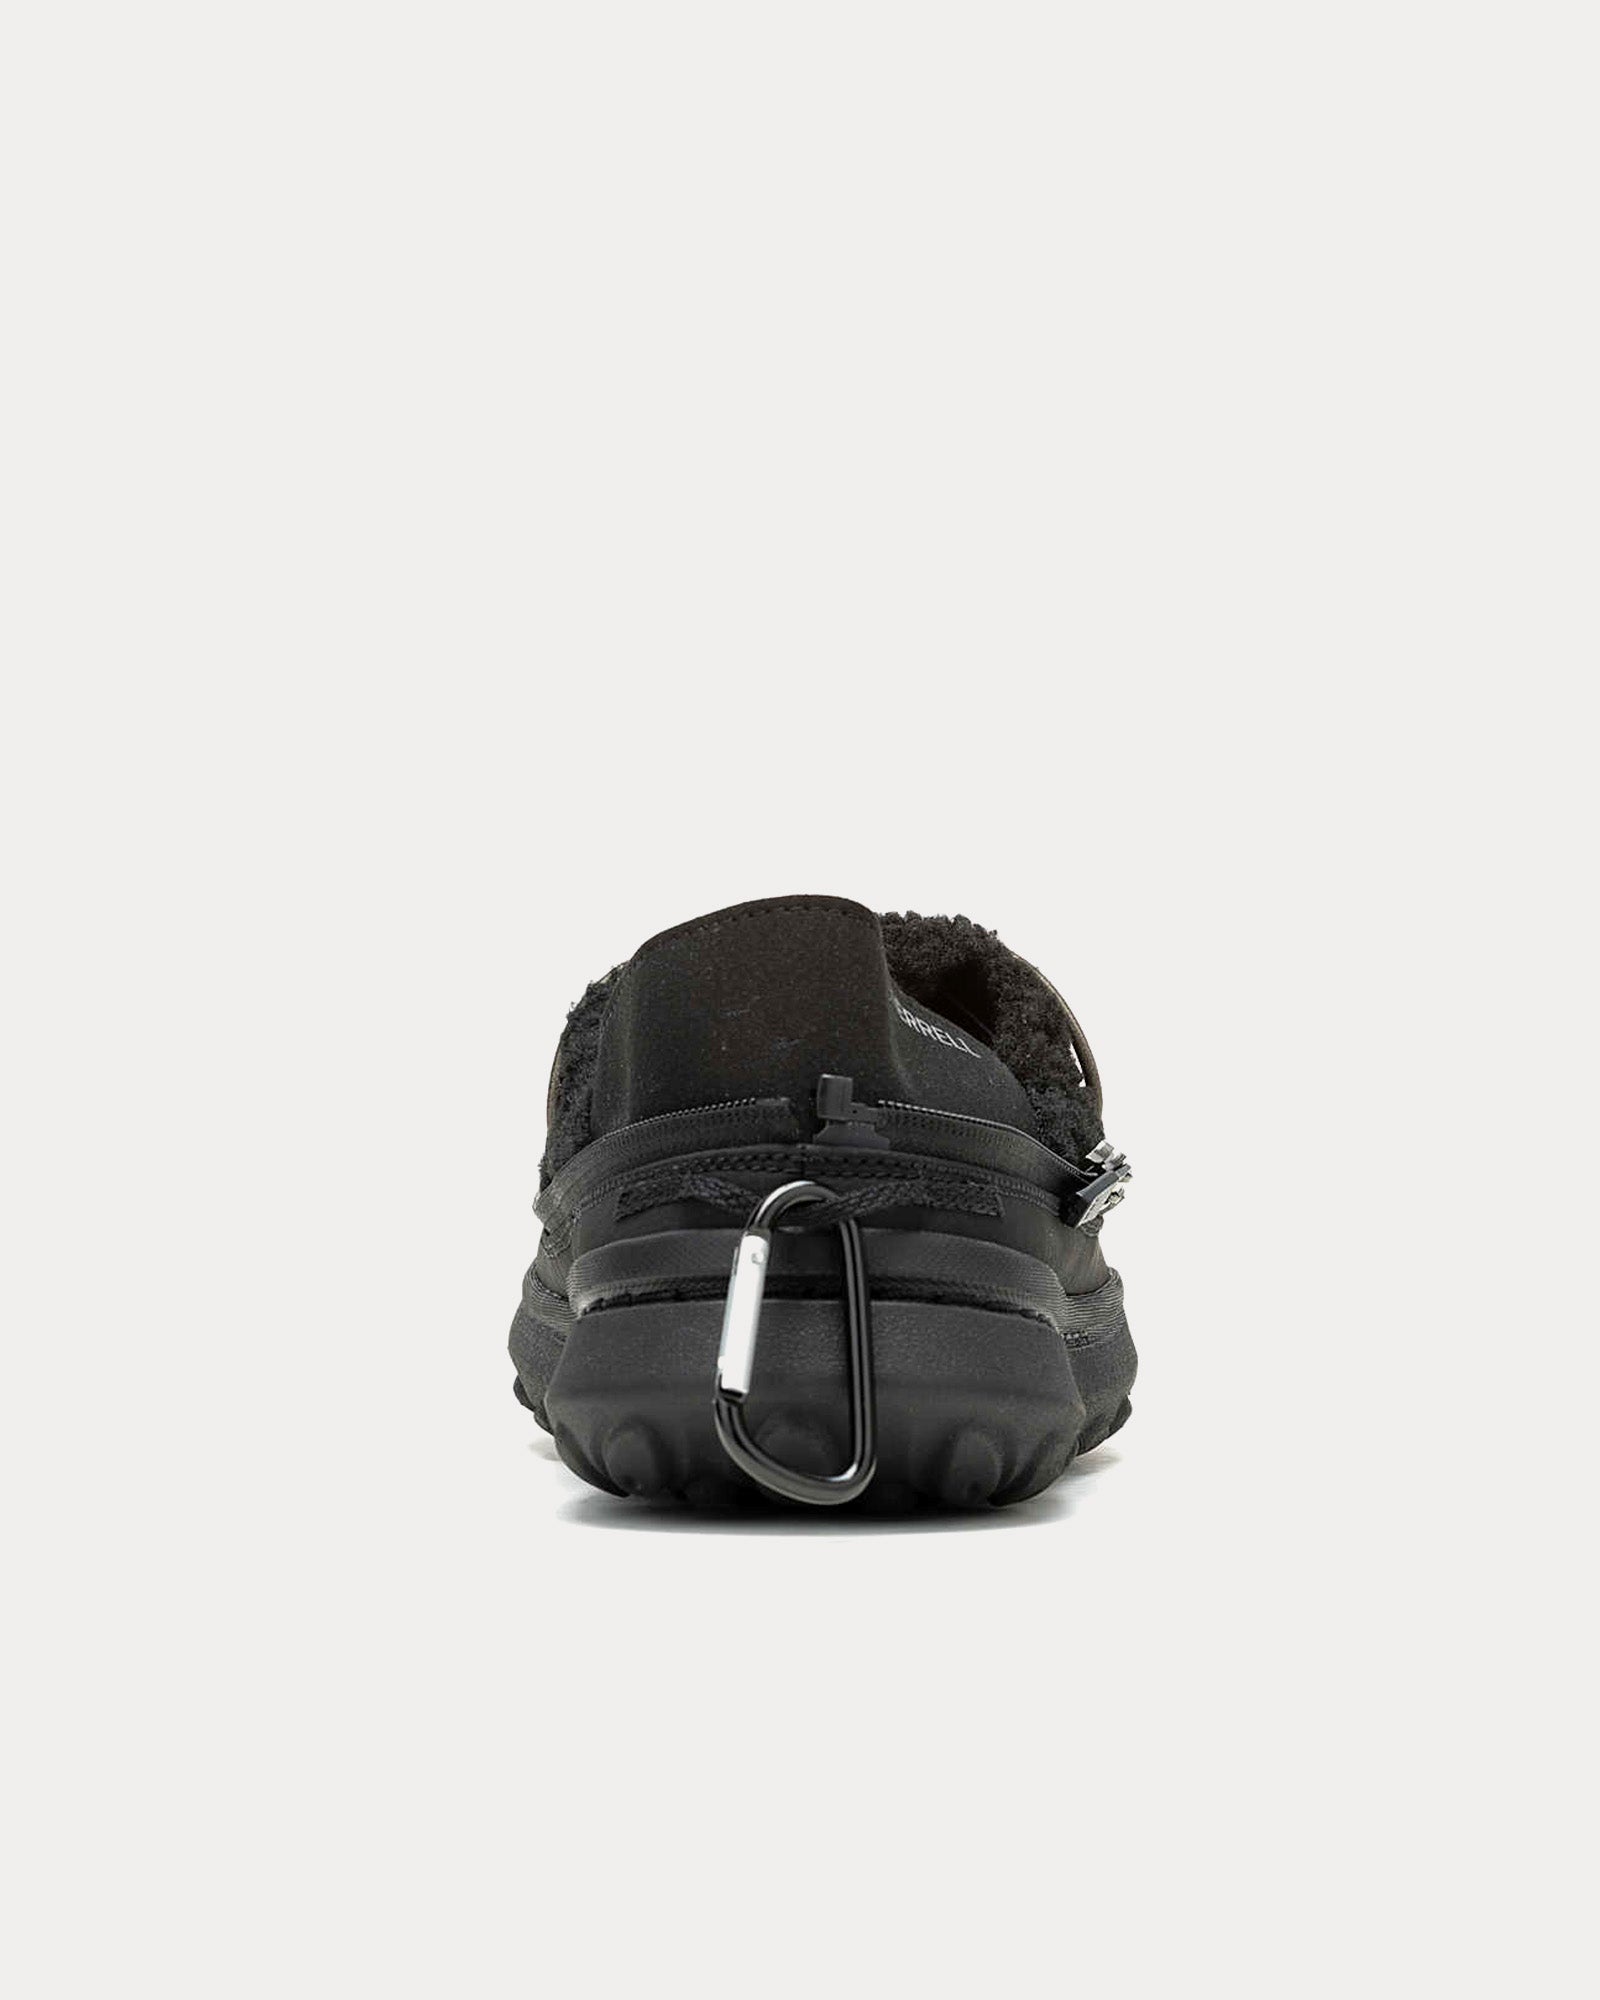 Merrell 1TRL - Hut Moc 2 Packable Fleece Black / Black Low Top Sneakers